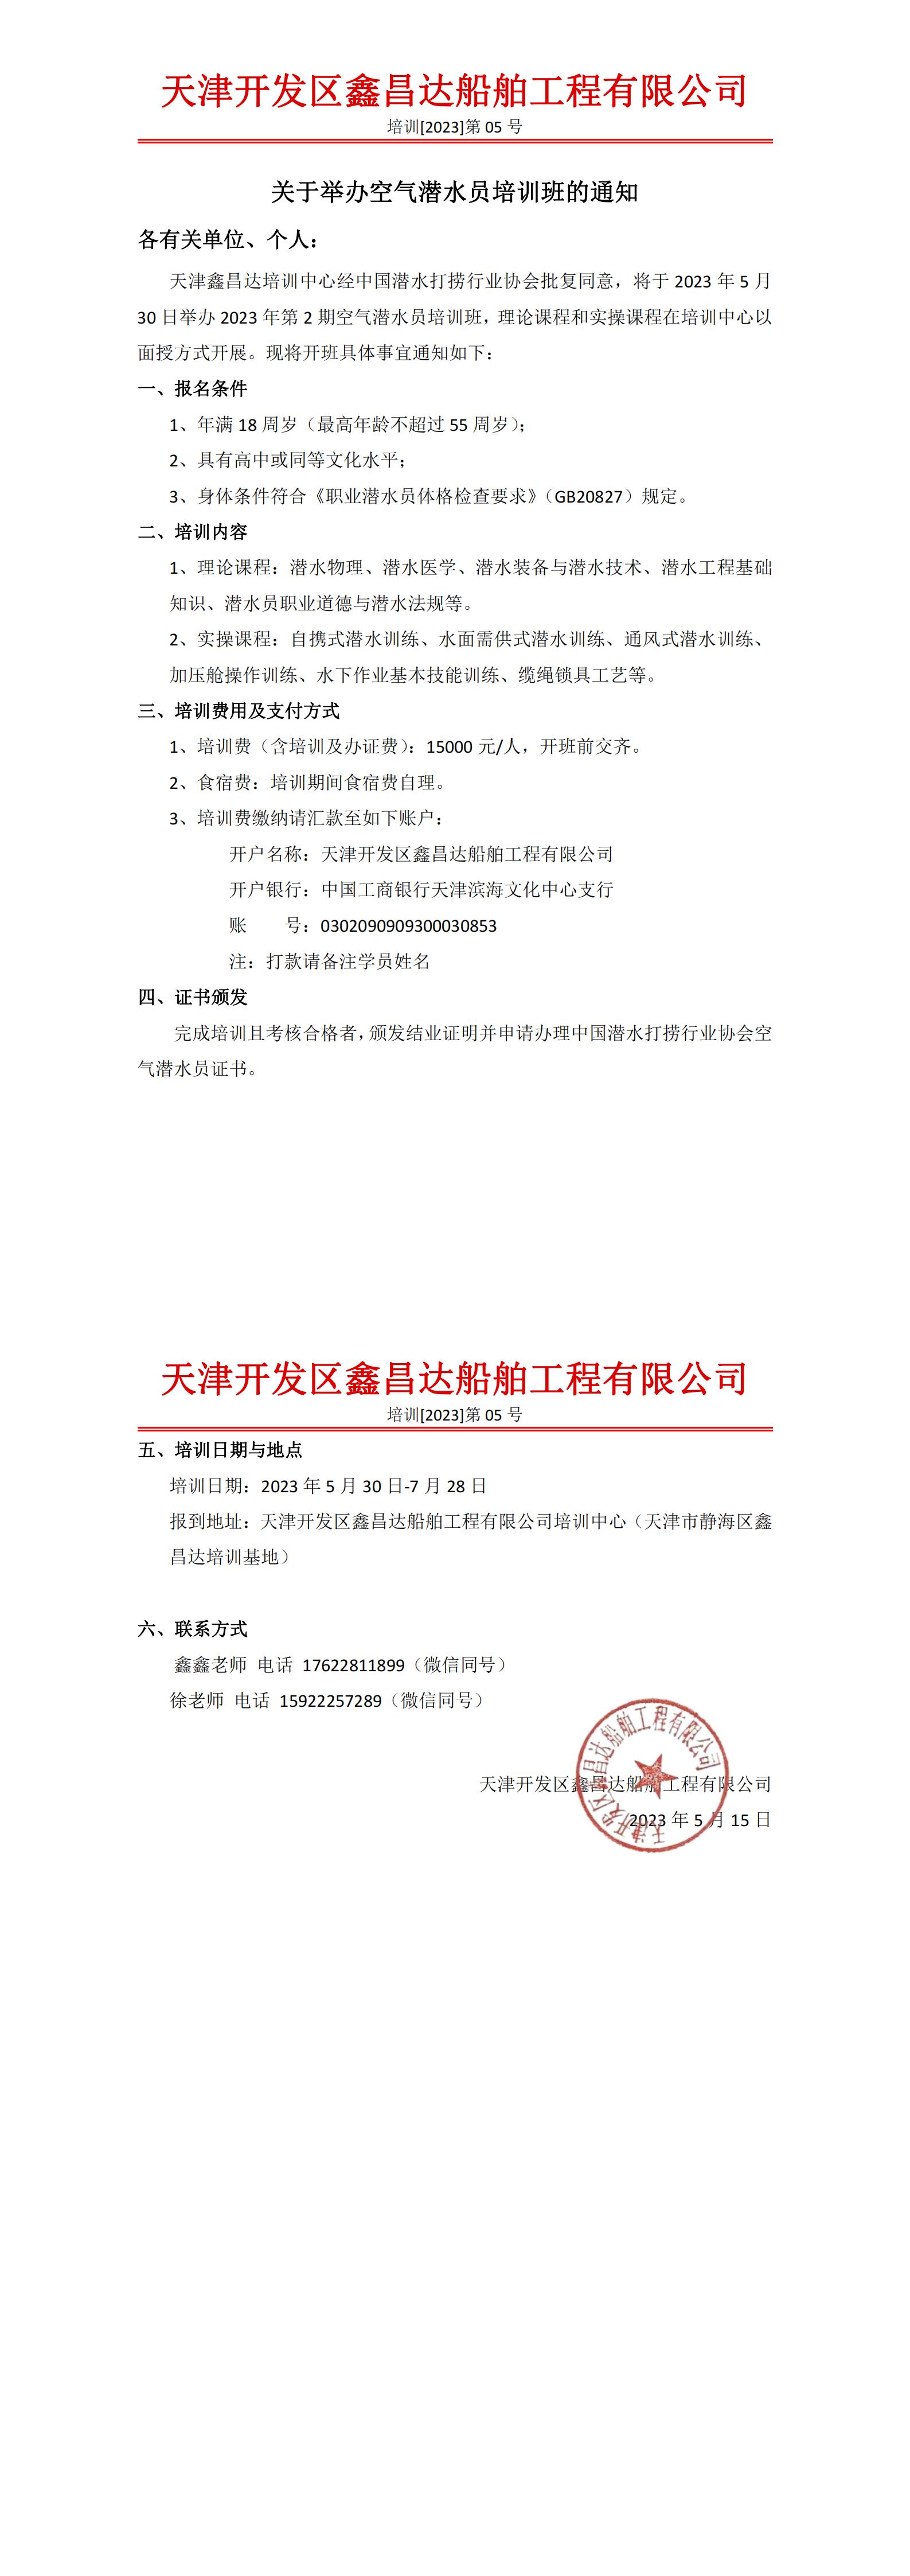 天津开发区鑫昌达船舶工程有限公司关于举办空气潜水员培训班的通知_00.jpg